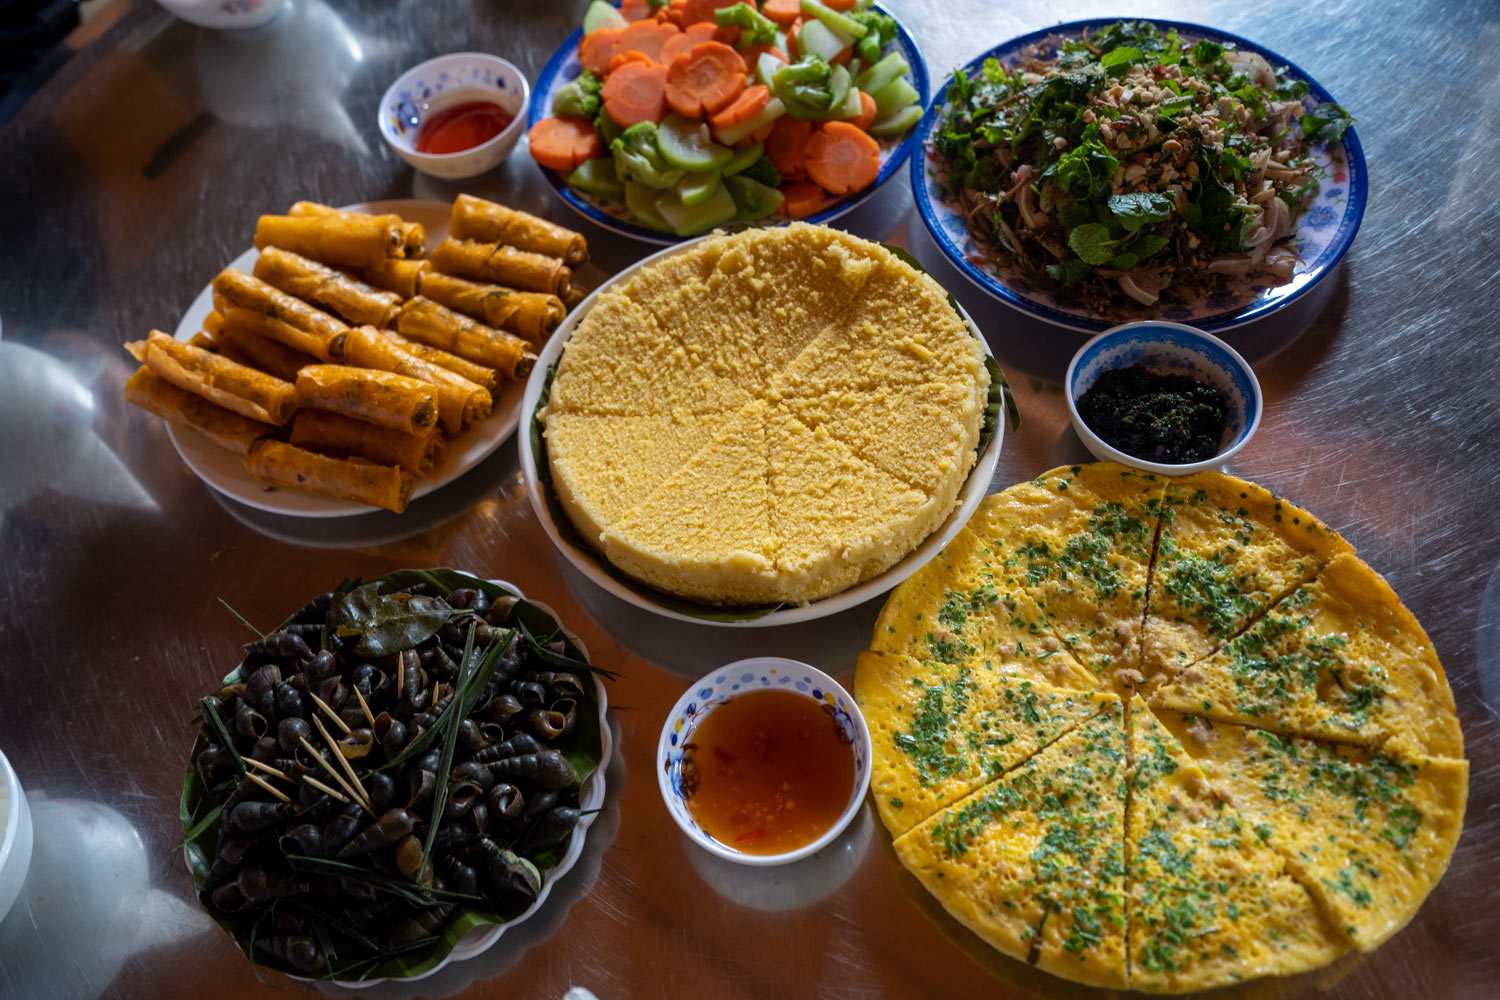 Các món ăn dân dã nhưng ngon miệng tại nhà người dân ở làng Tân Hóa.